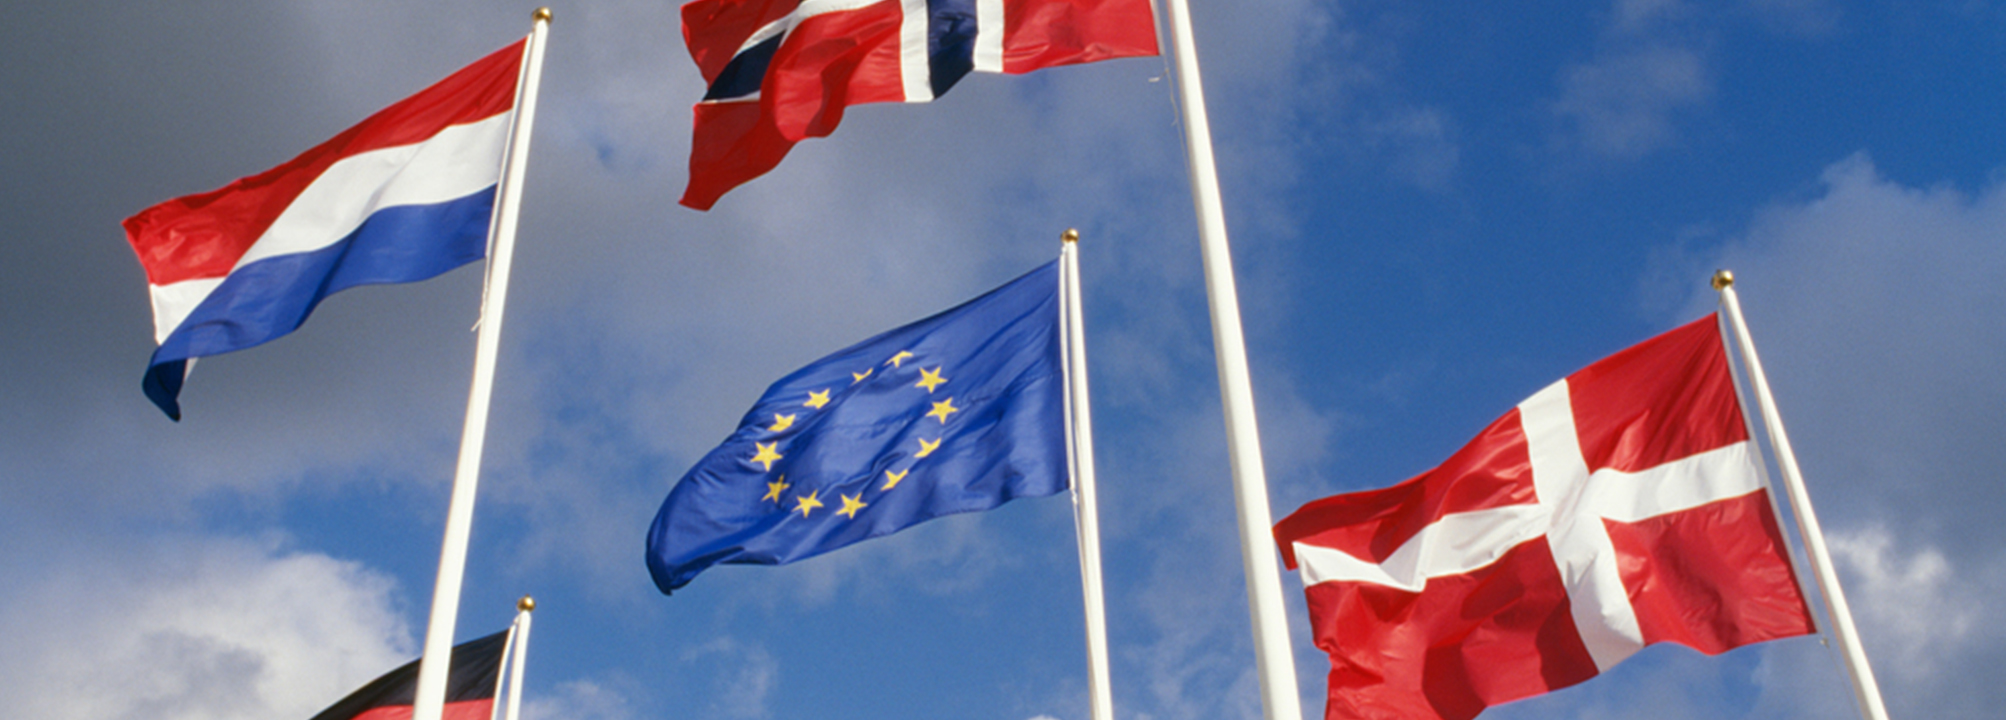 Flaggor med EU-flaggan i mitten.